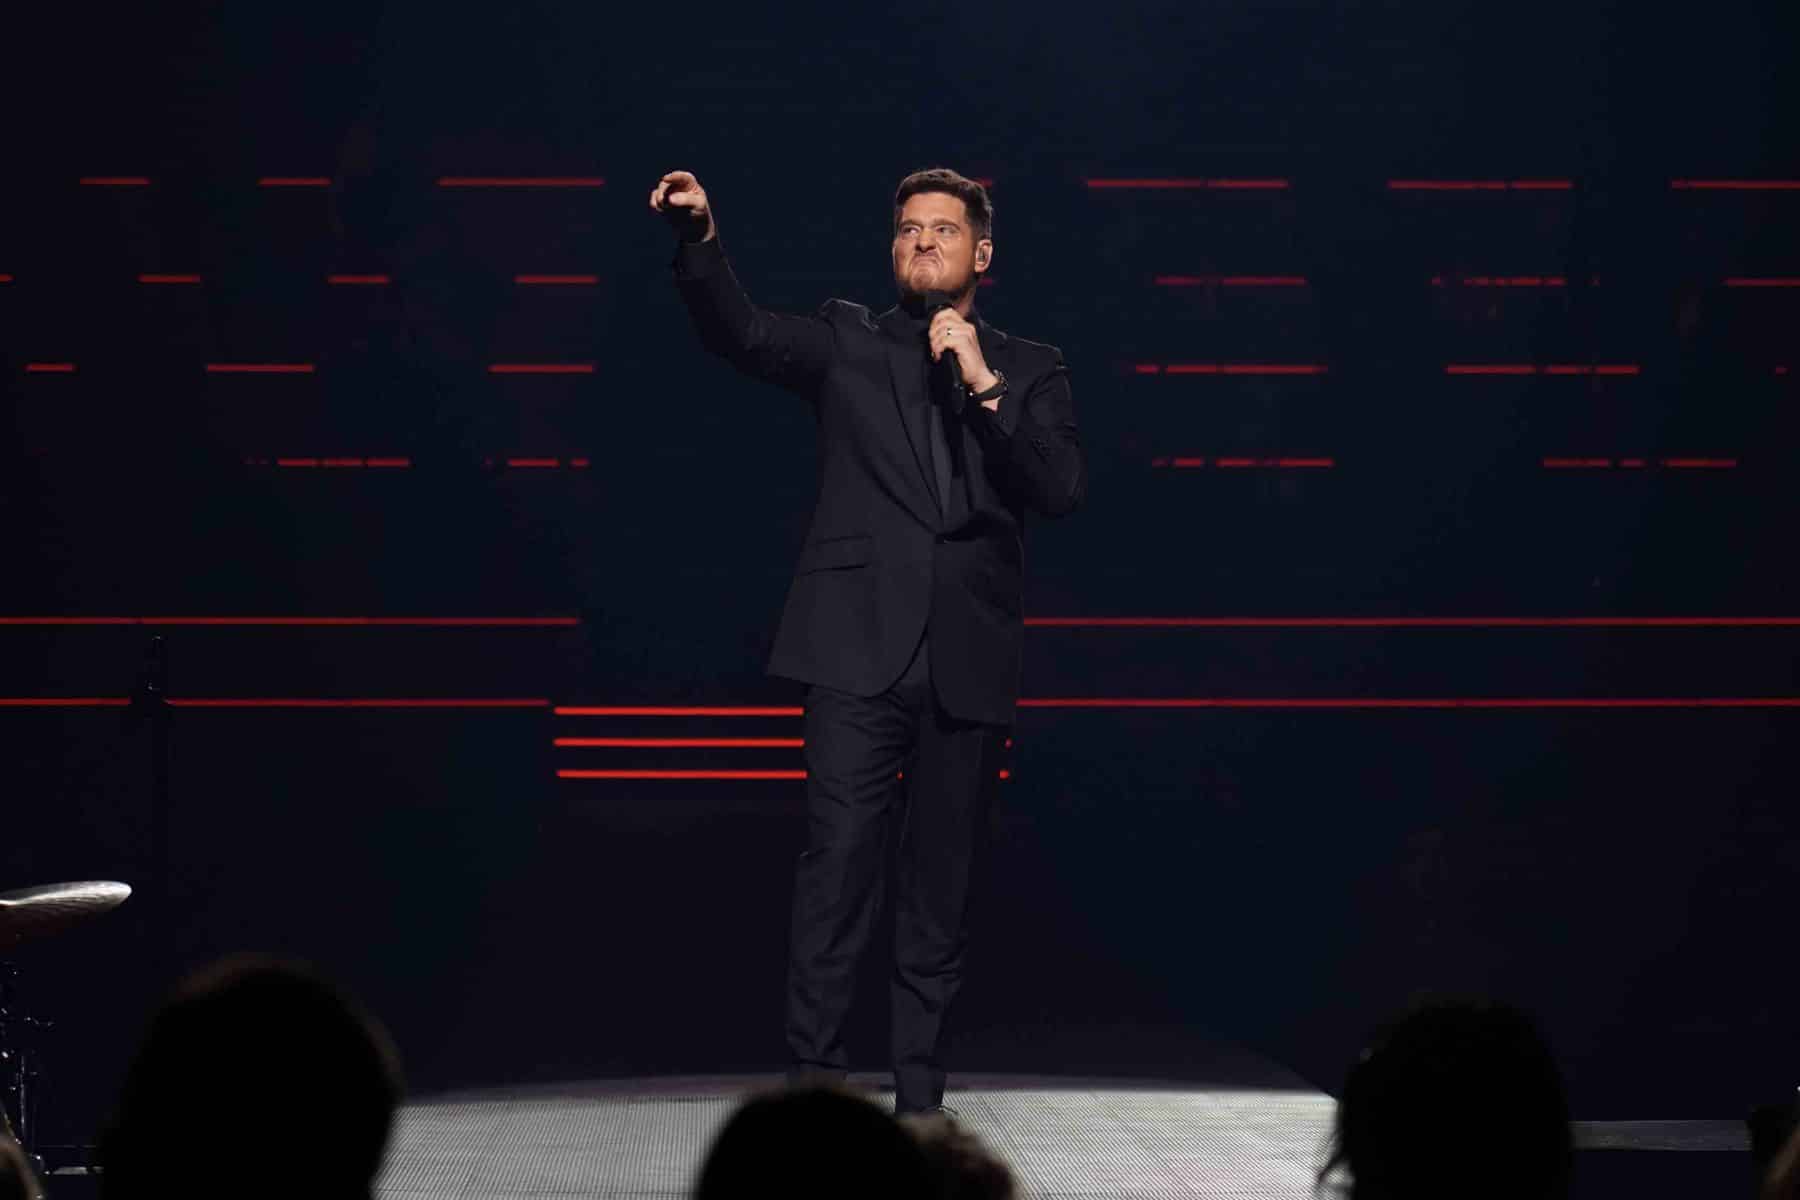 18.03.2023 Michael Bublé präsentierte sein herausragendes Repertoire in der SAP Arena Mannheim.
Foto © by Boris Korpak/ bokopictures